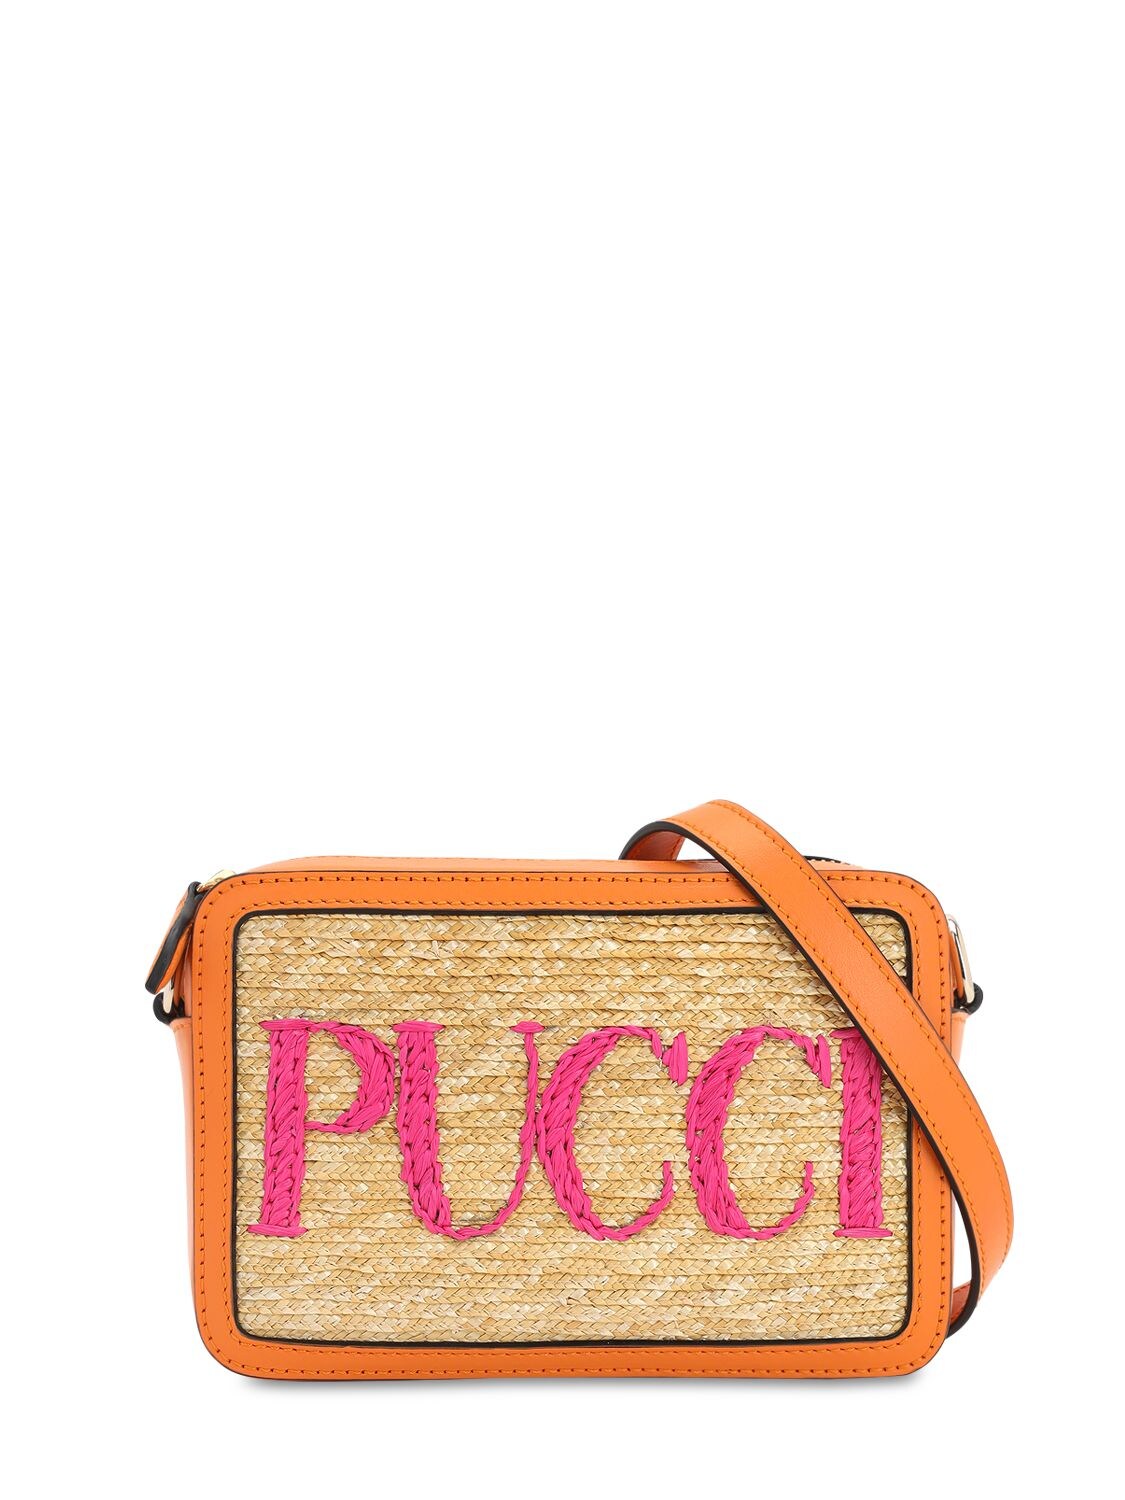 Emilio Pucci, Bags, New Emilio Pucci Commessa Signature Orange Handbag